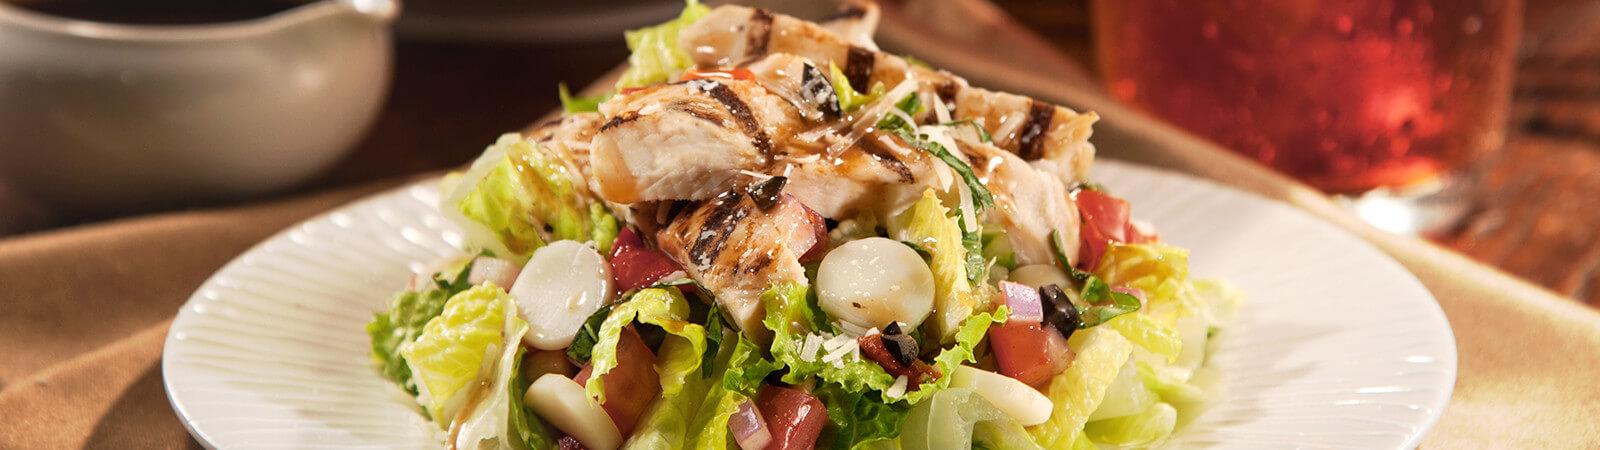 Chicken Bruschetta Salad Recipe